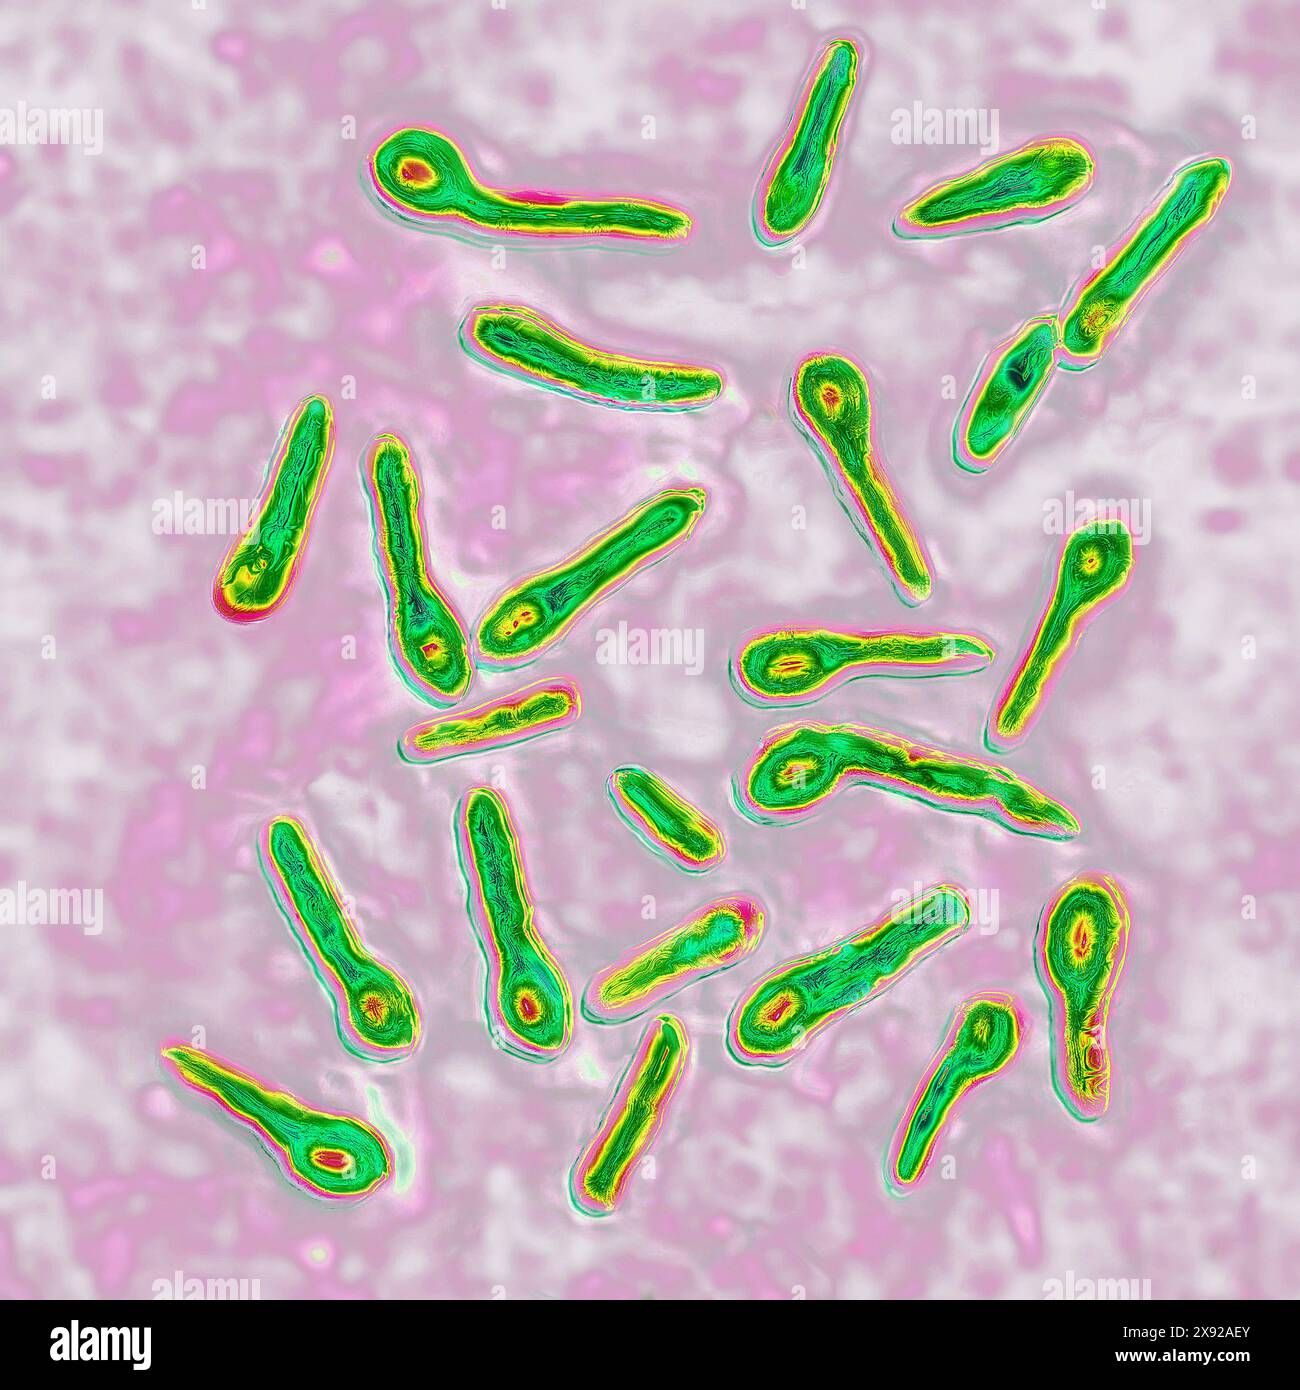 Clostridium tetani ou bacille de NicolaÃer est la bactérie responsable du tétanos. Même une contamination minimale dans une plaie conduit à la production d'une toxine neurotrope, la tétanospasmine, qui se lie au système nerveux central, causant des contractures et une paralysie. Image produite par microscopie optique. Bacille tétanique 016813 059 Banque D'Images